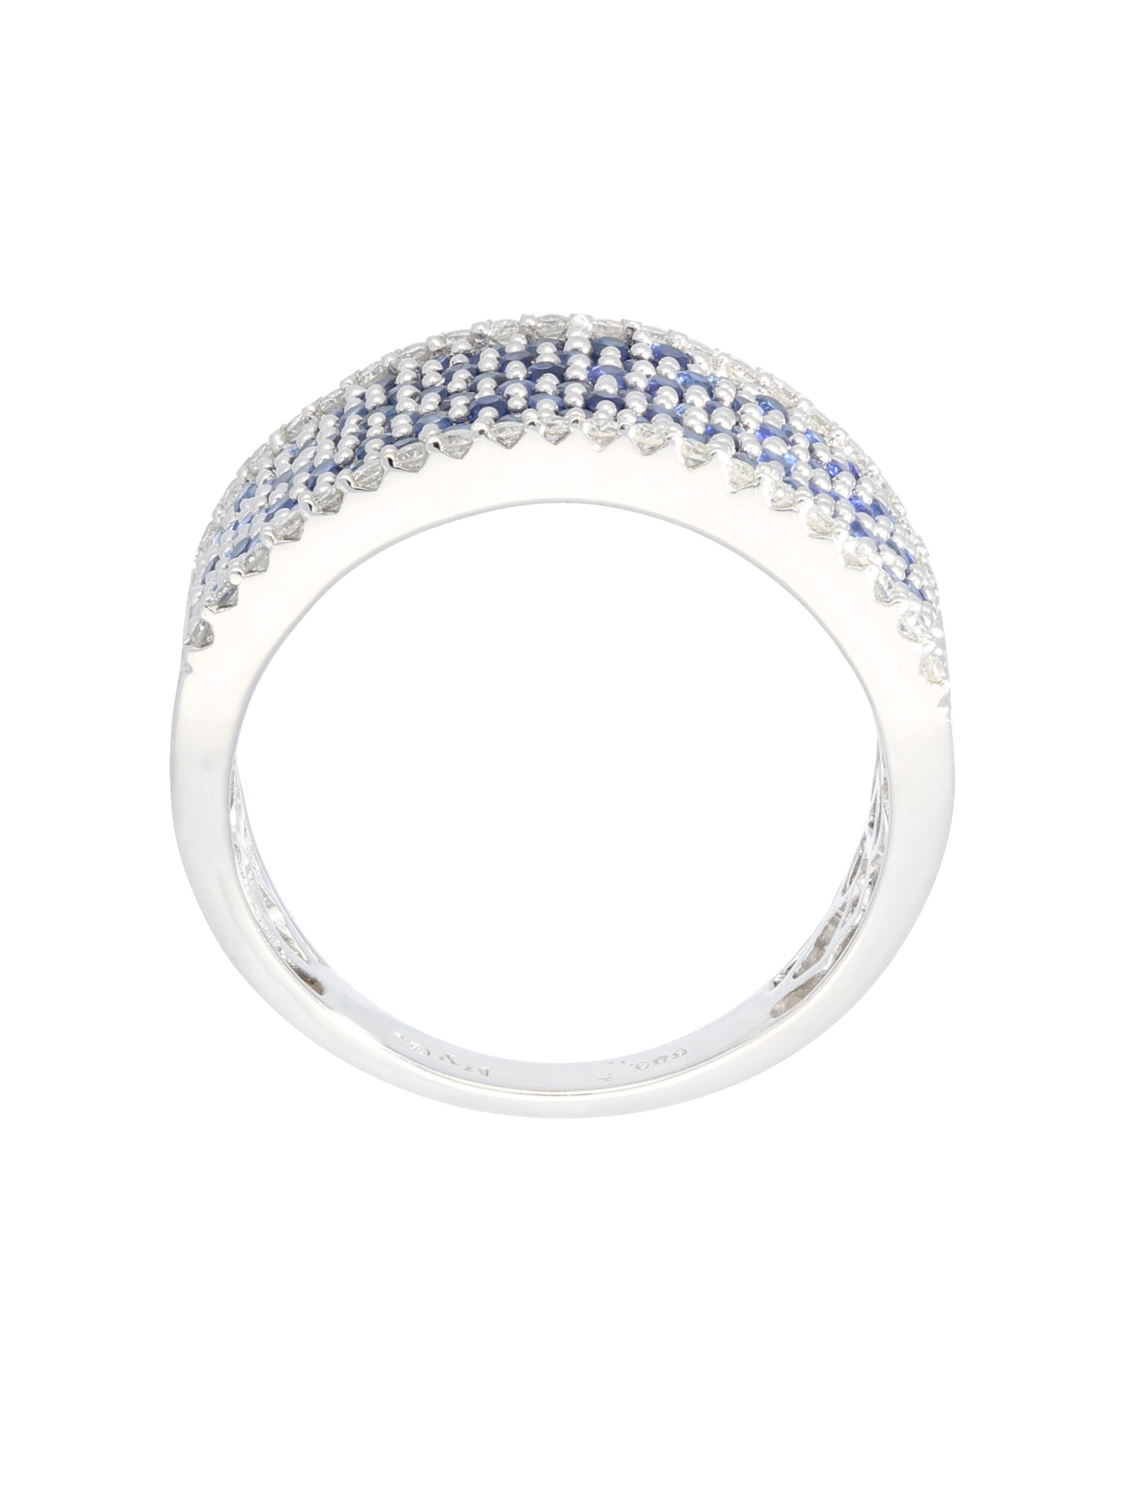 Panache - Ring Diamant Saphir 585 Weißgold - Größe 56